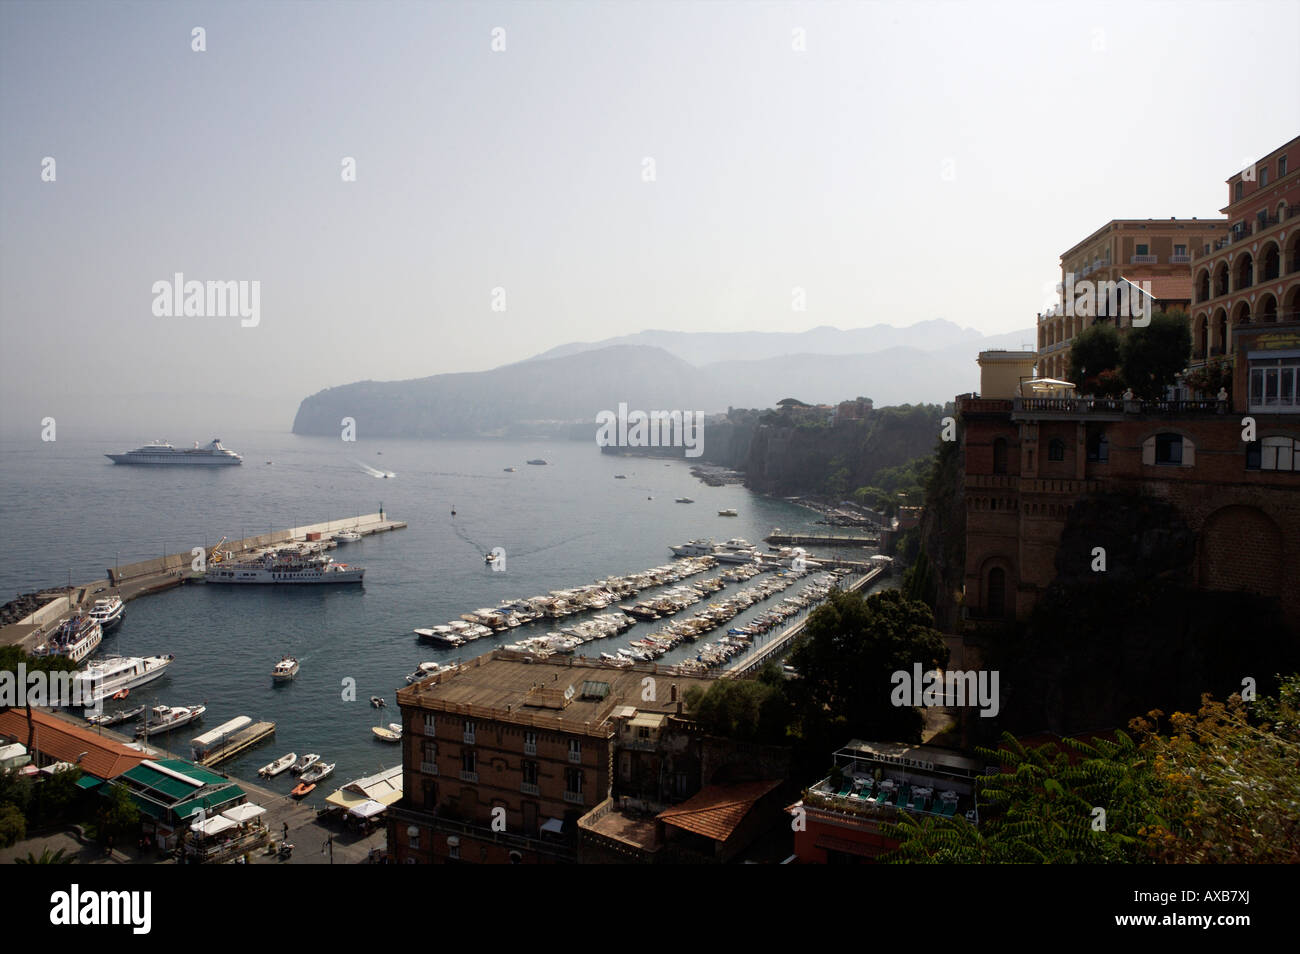 Une vue du port de Sorrento avec un bateau de croisière dans l'arrière-plan et divers hôtels, bateaux et yachts à l'avant-plan Banque D'Images